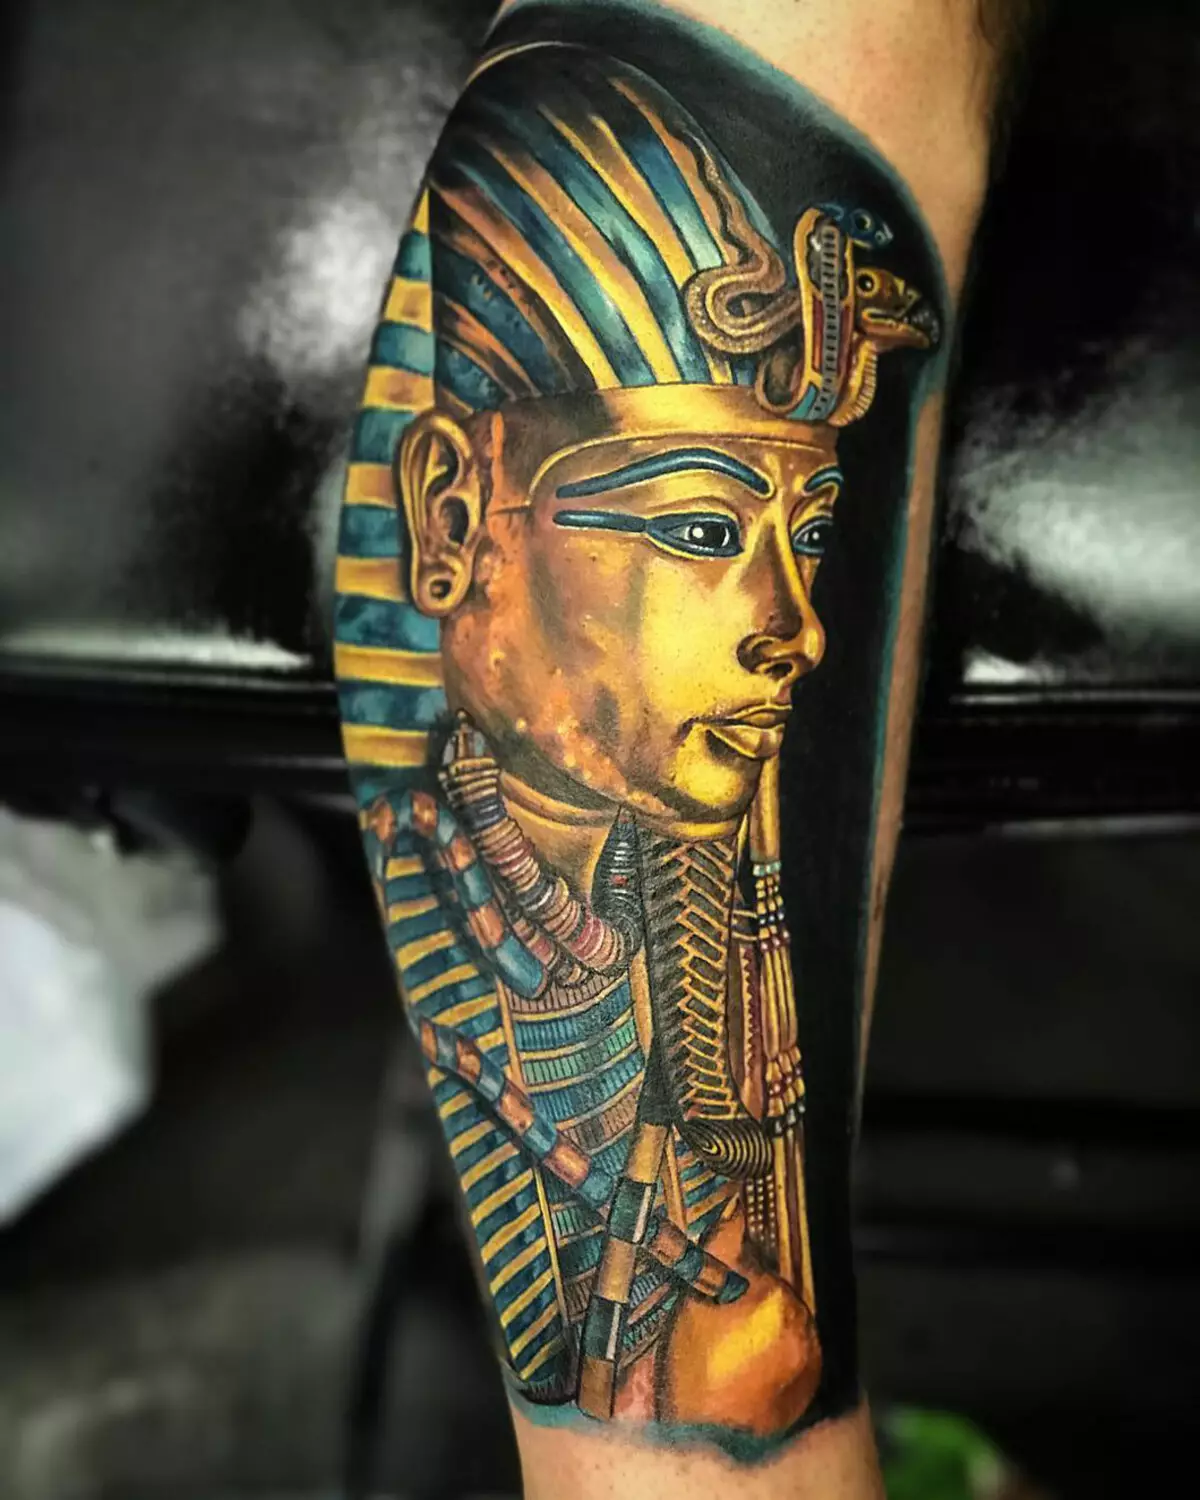 Egyptin tatuointi: Tattooksen luonnokset Egyptin teeman kanssa, symbolien tarkastelu Egyptin tyyliin, hihat hieroglyfistä ja muista tatuoista miehille ja naisille, niiden merkityksestä 14114_20